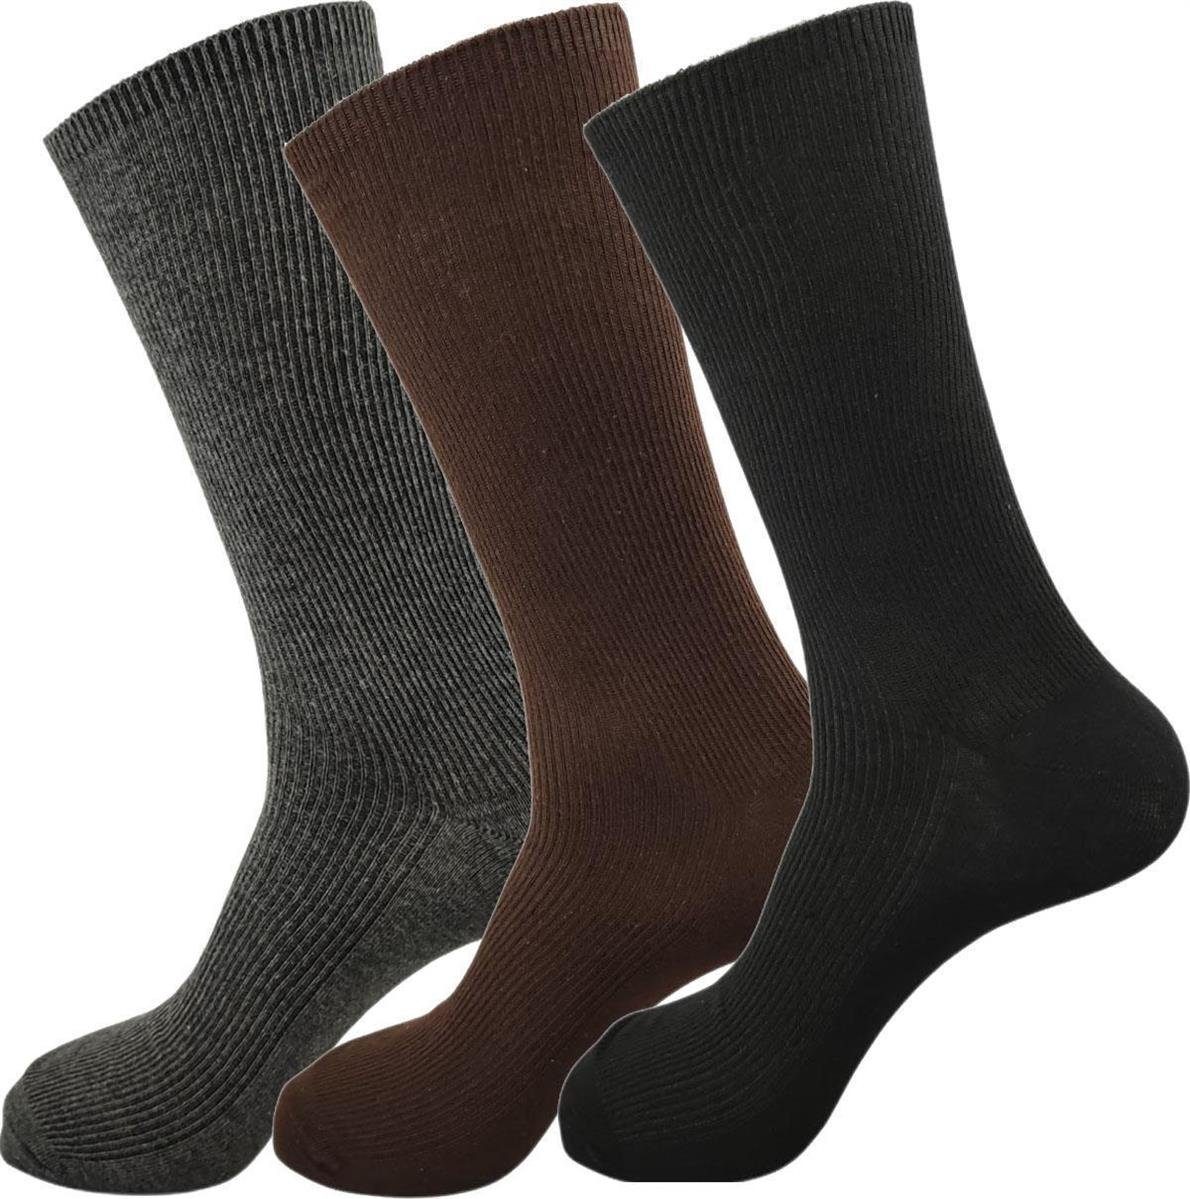 Preisgrenzen durchbrochen!! EloModa Basicsocken 3 Paar Socken Form Freizeit Gemischt, in Business; schwarz (3-Paar) grau, braun, klassischer Anzug